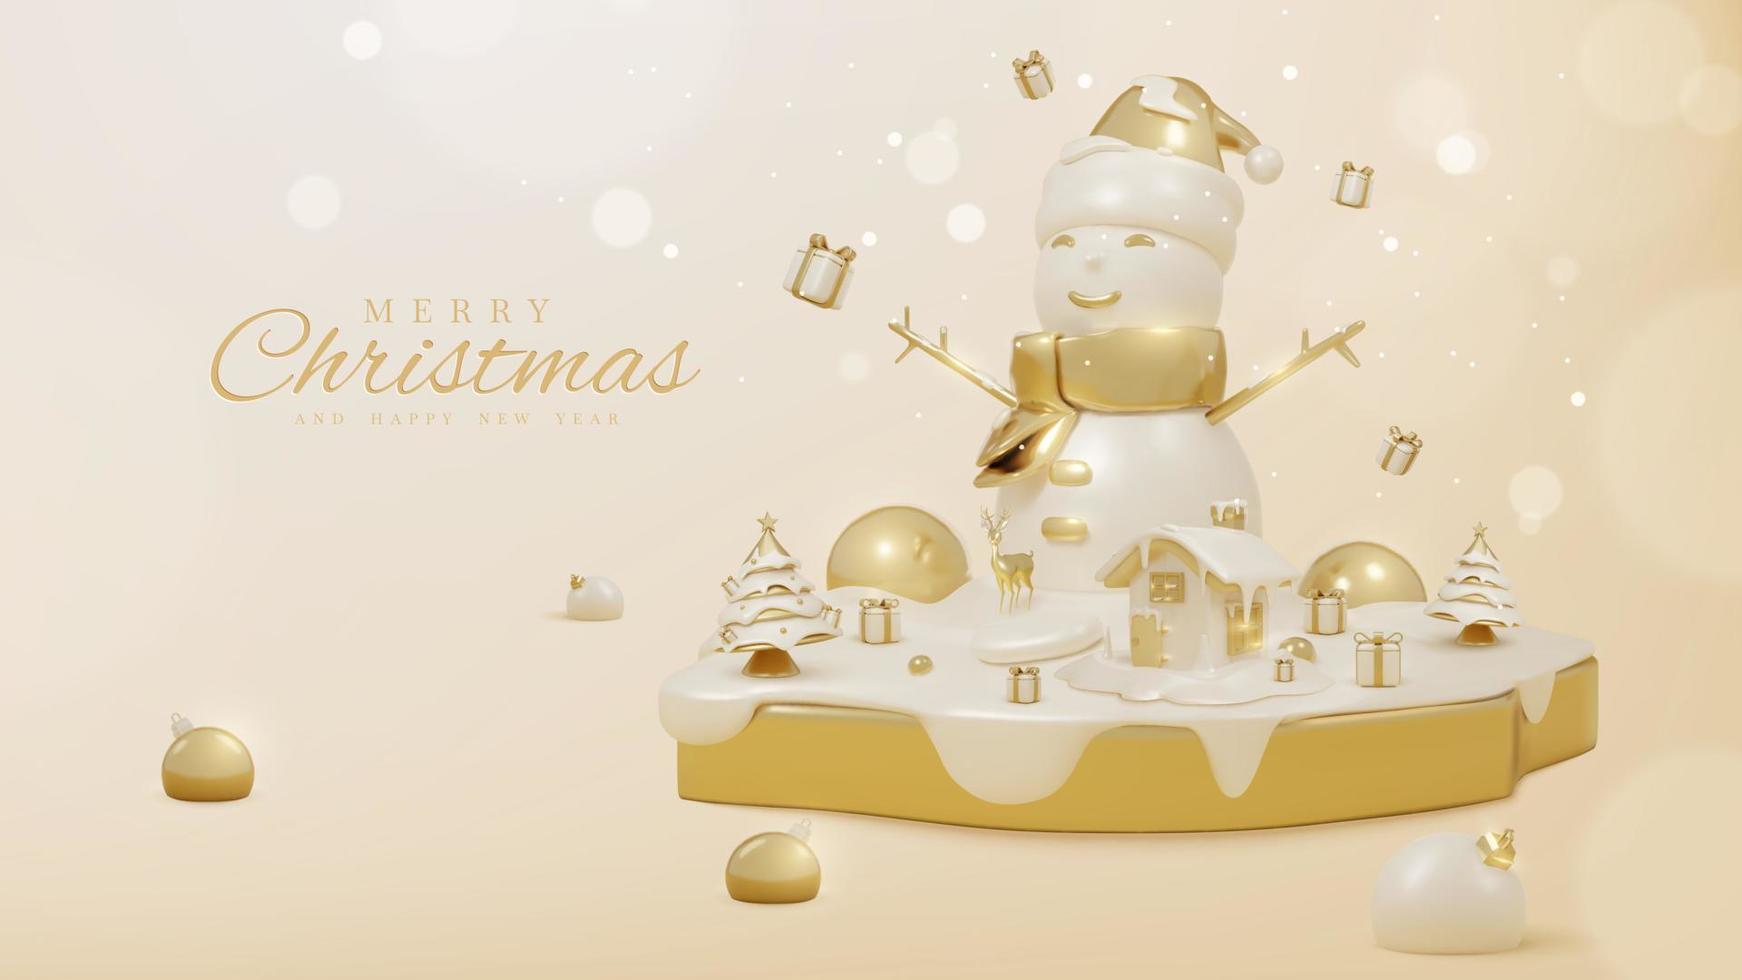 fundo de luxo com boneco de neve no pódio dourado e enfeites de natal realistas 3d e efeito de luz cintilante com decorações de bokeh e neve. ilustração vetorial. vetor